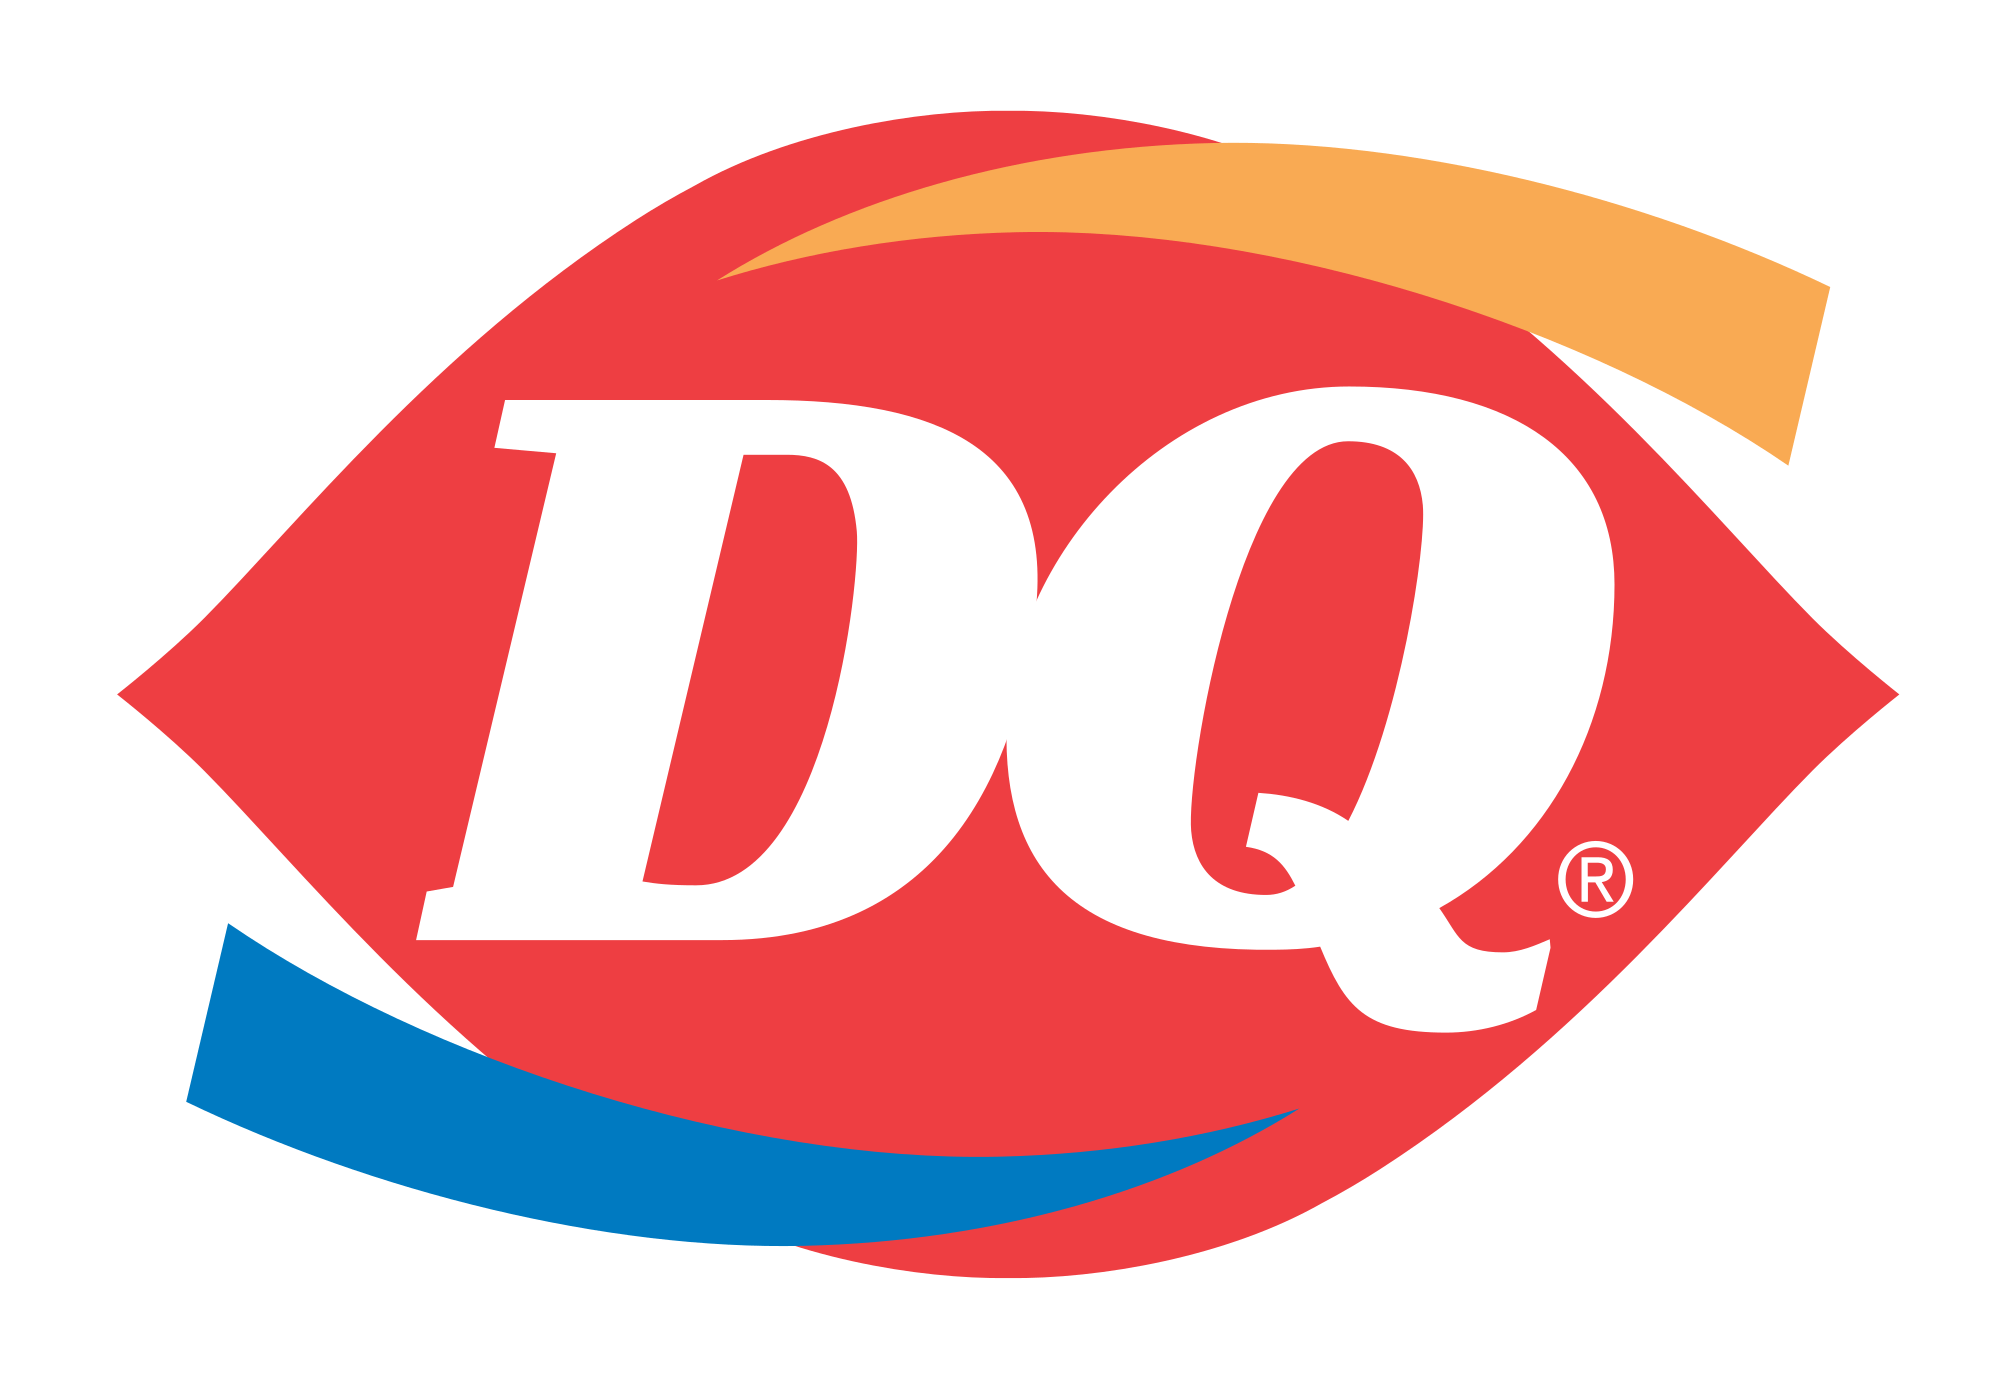 What Restaurant Logo - Dairy Queen